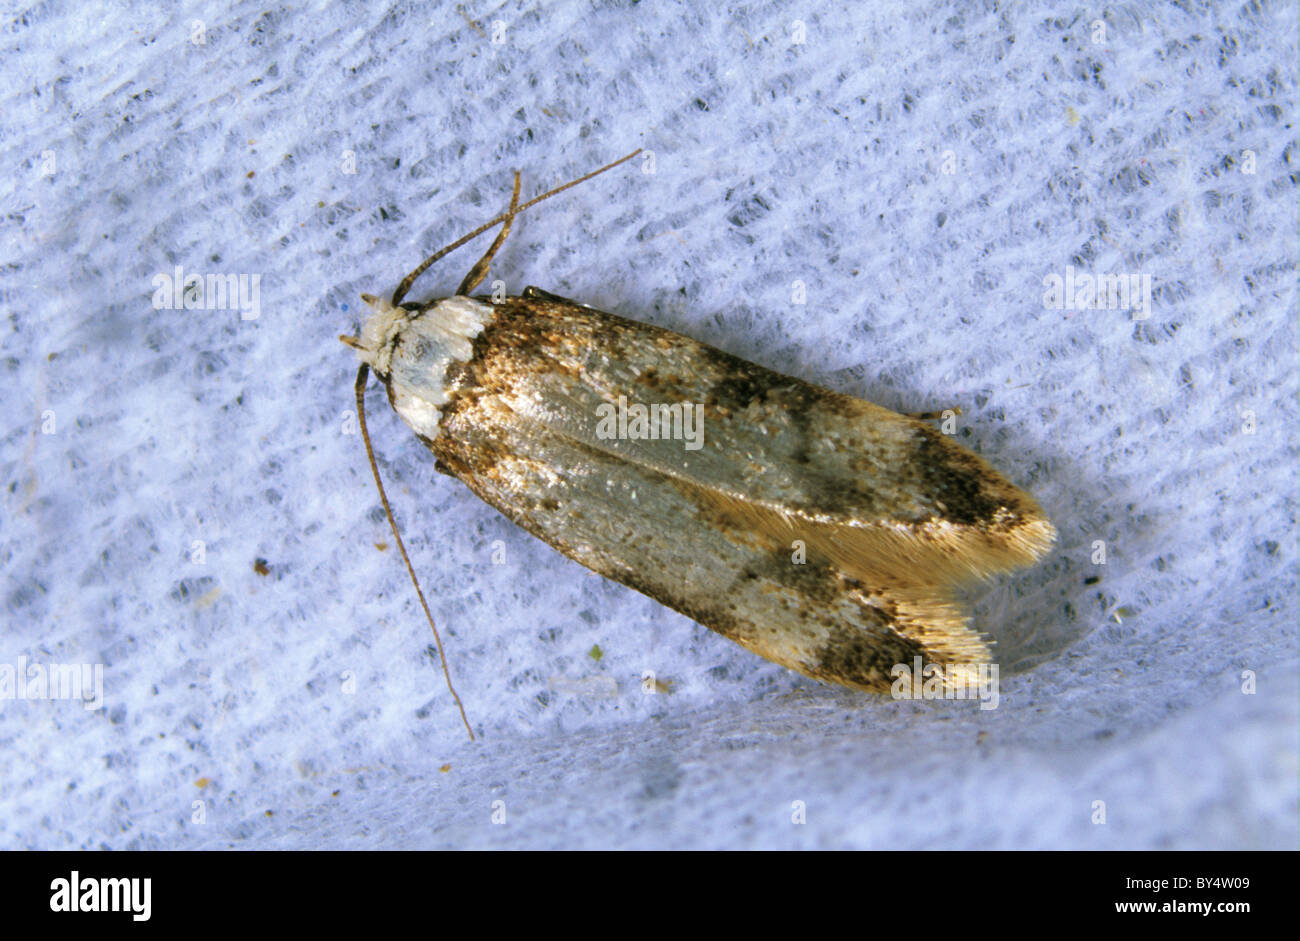 Escalonado de la casa blanca Endrosis sarcitrella moth (polilla) casa pest Foto de stock